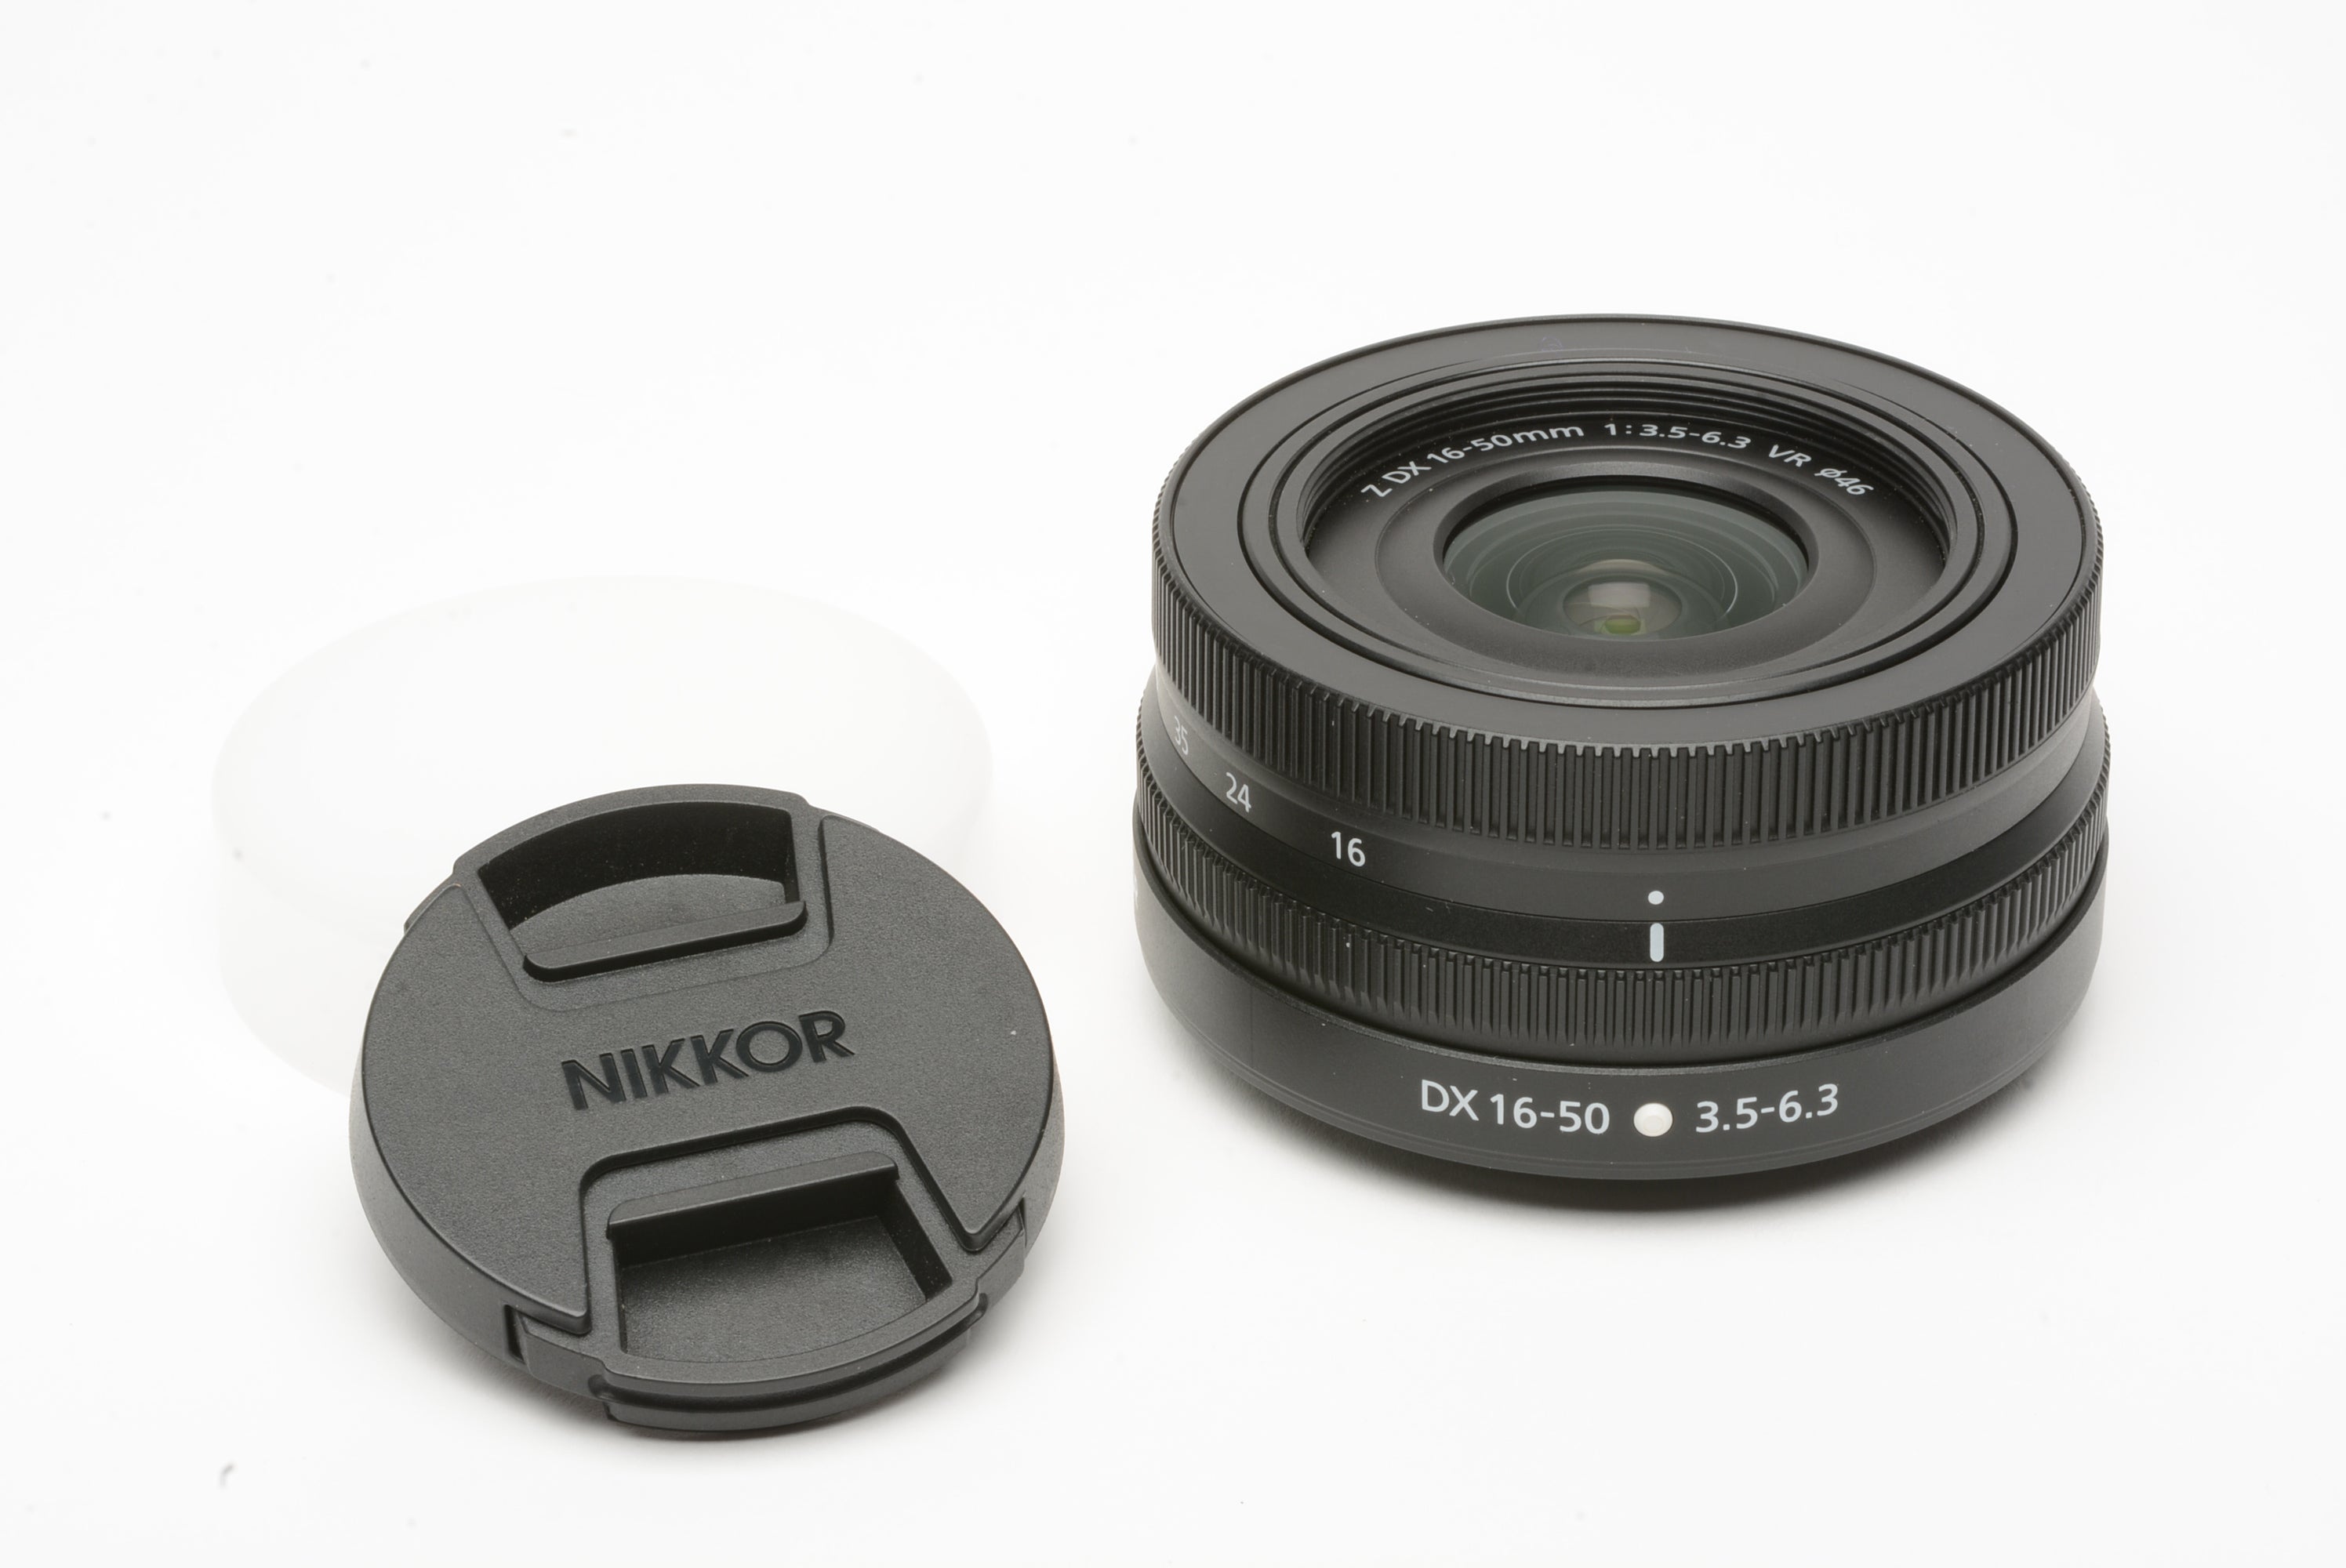 Nikon Z DX 16-50mm f3.5-6.3 VR zoom lens, caps – RecycledPhoto